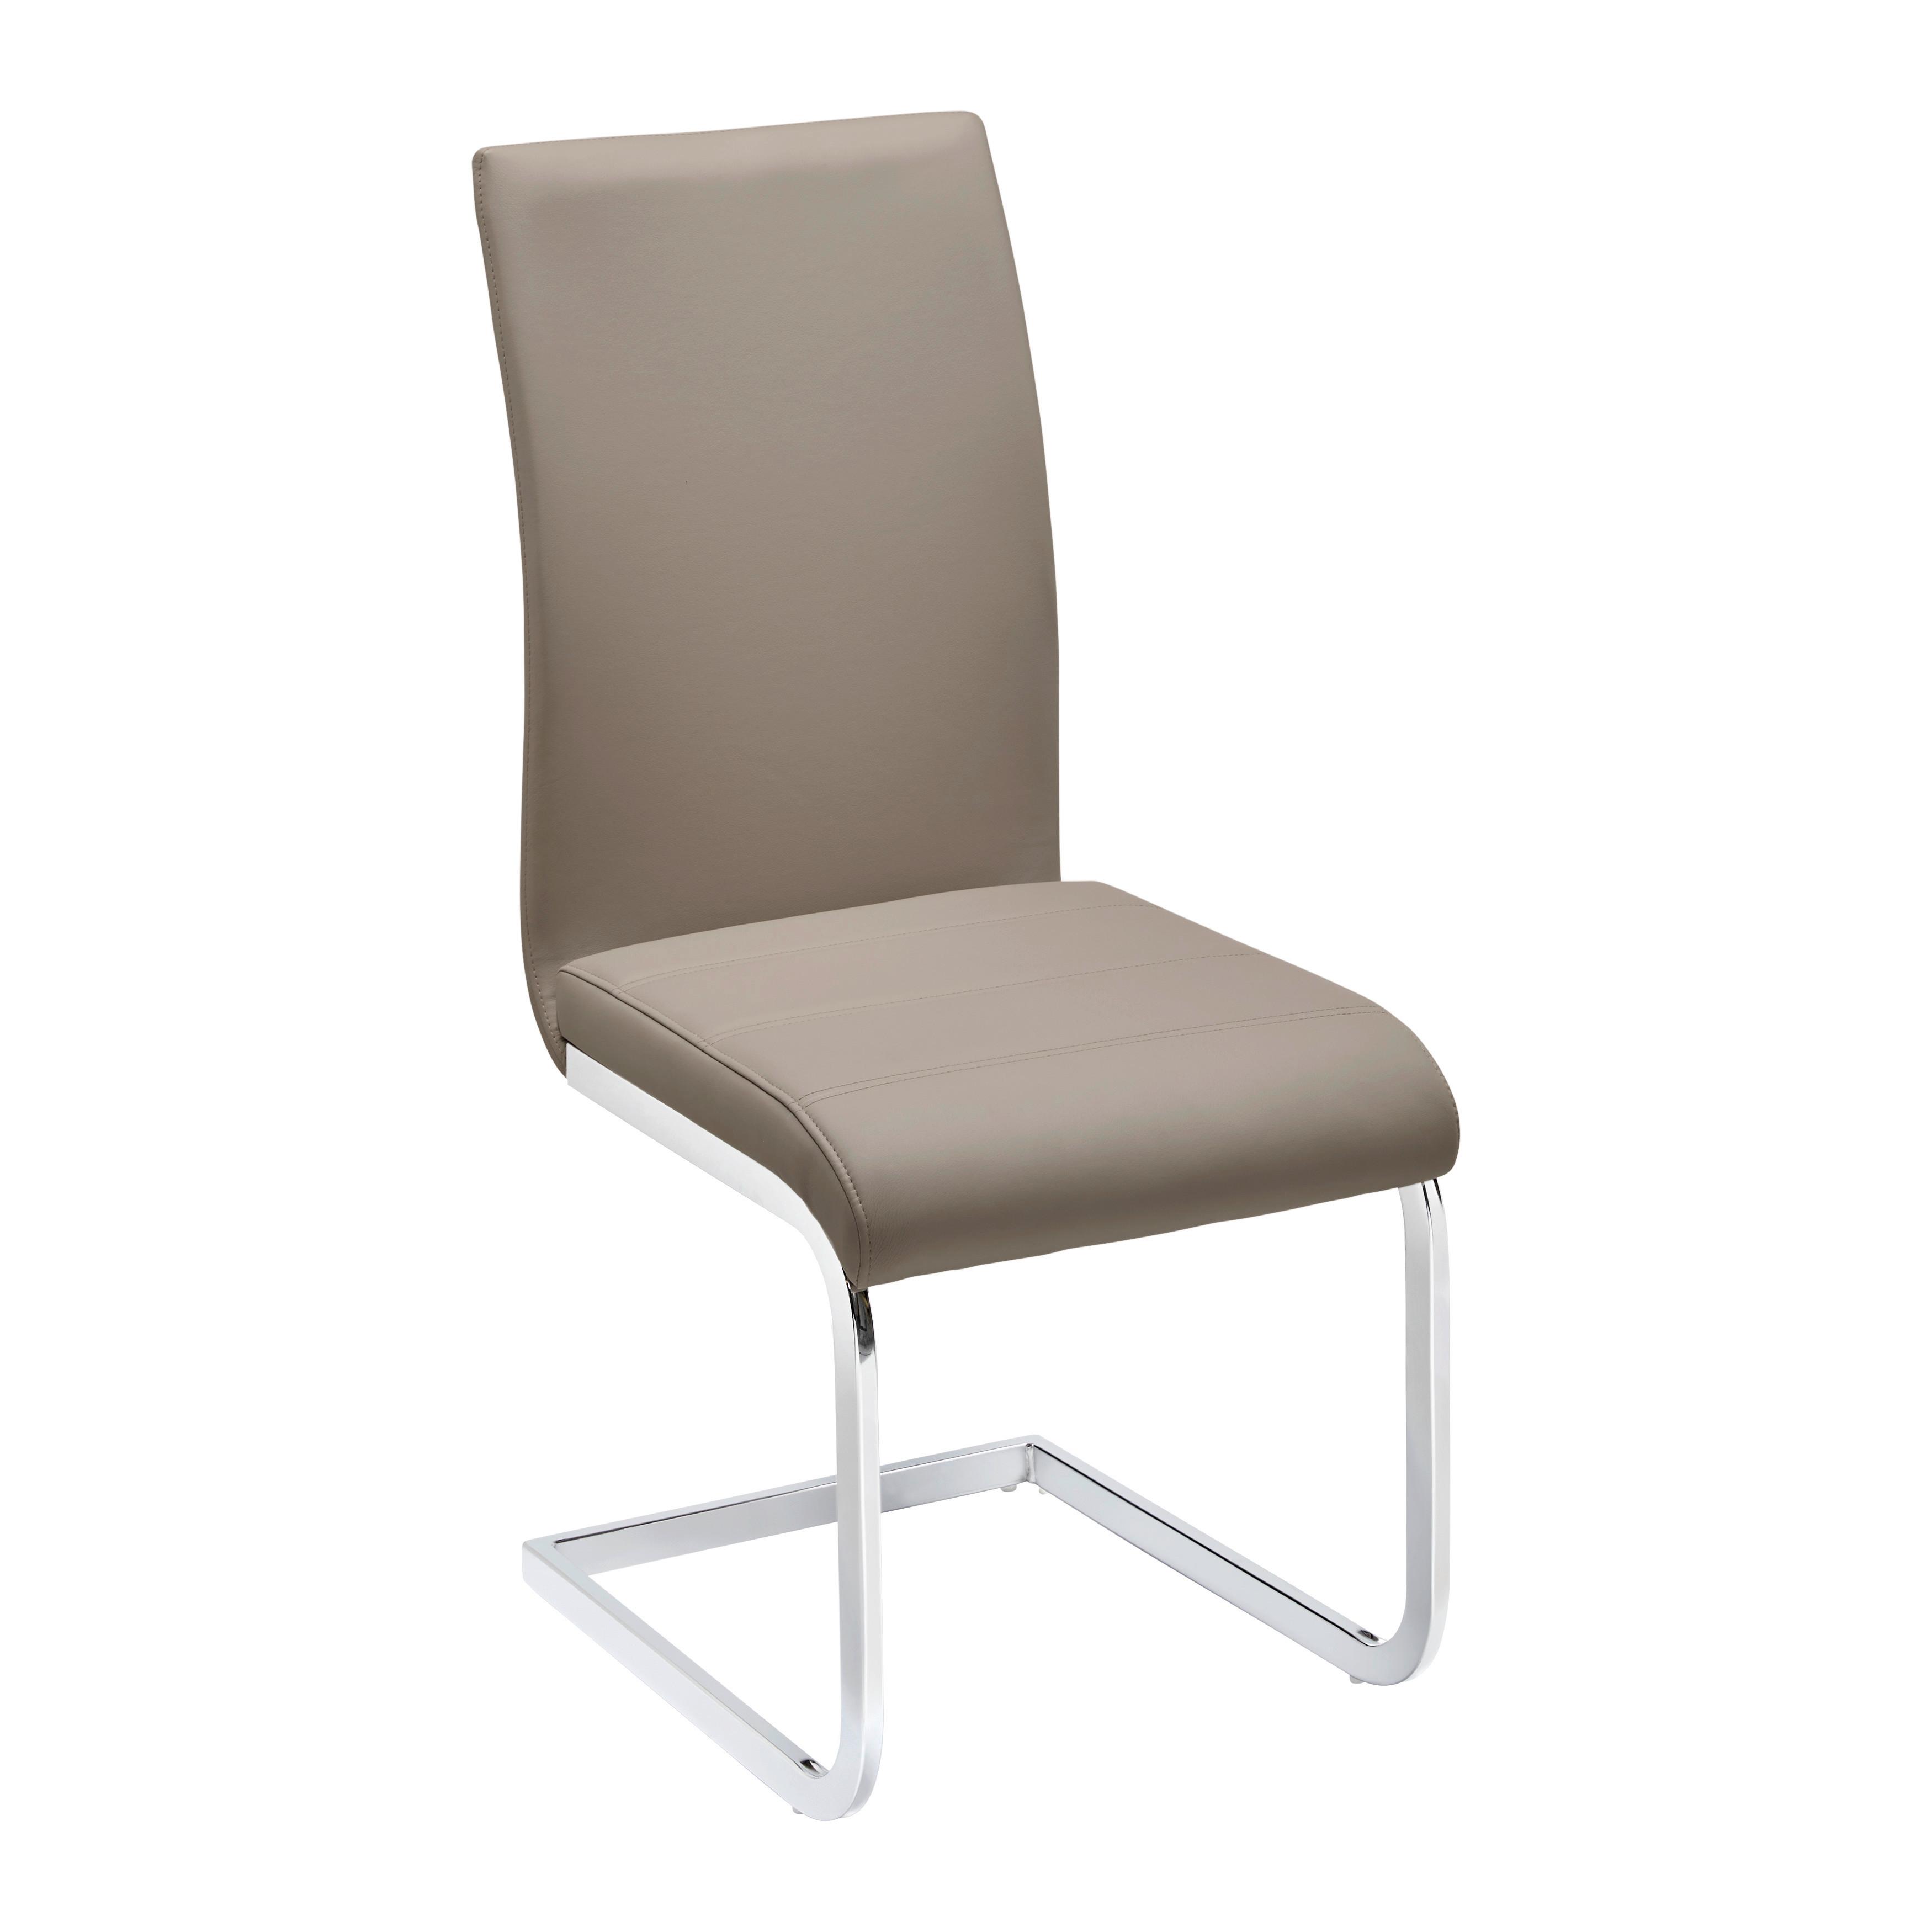 Židle Z Koženky Tanja - barvy chromu/šampaňská, Moderní, kov/dřevo (42/97/55cm) - P & B